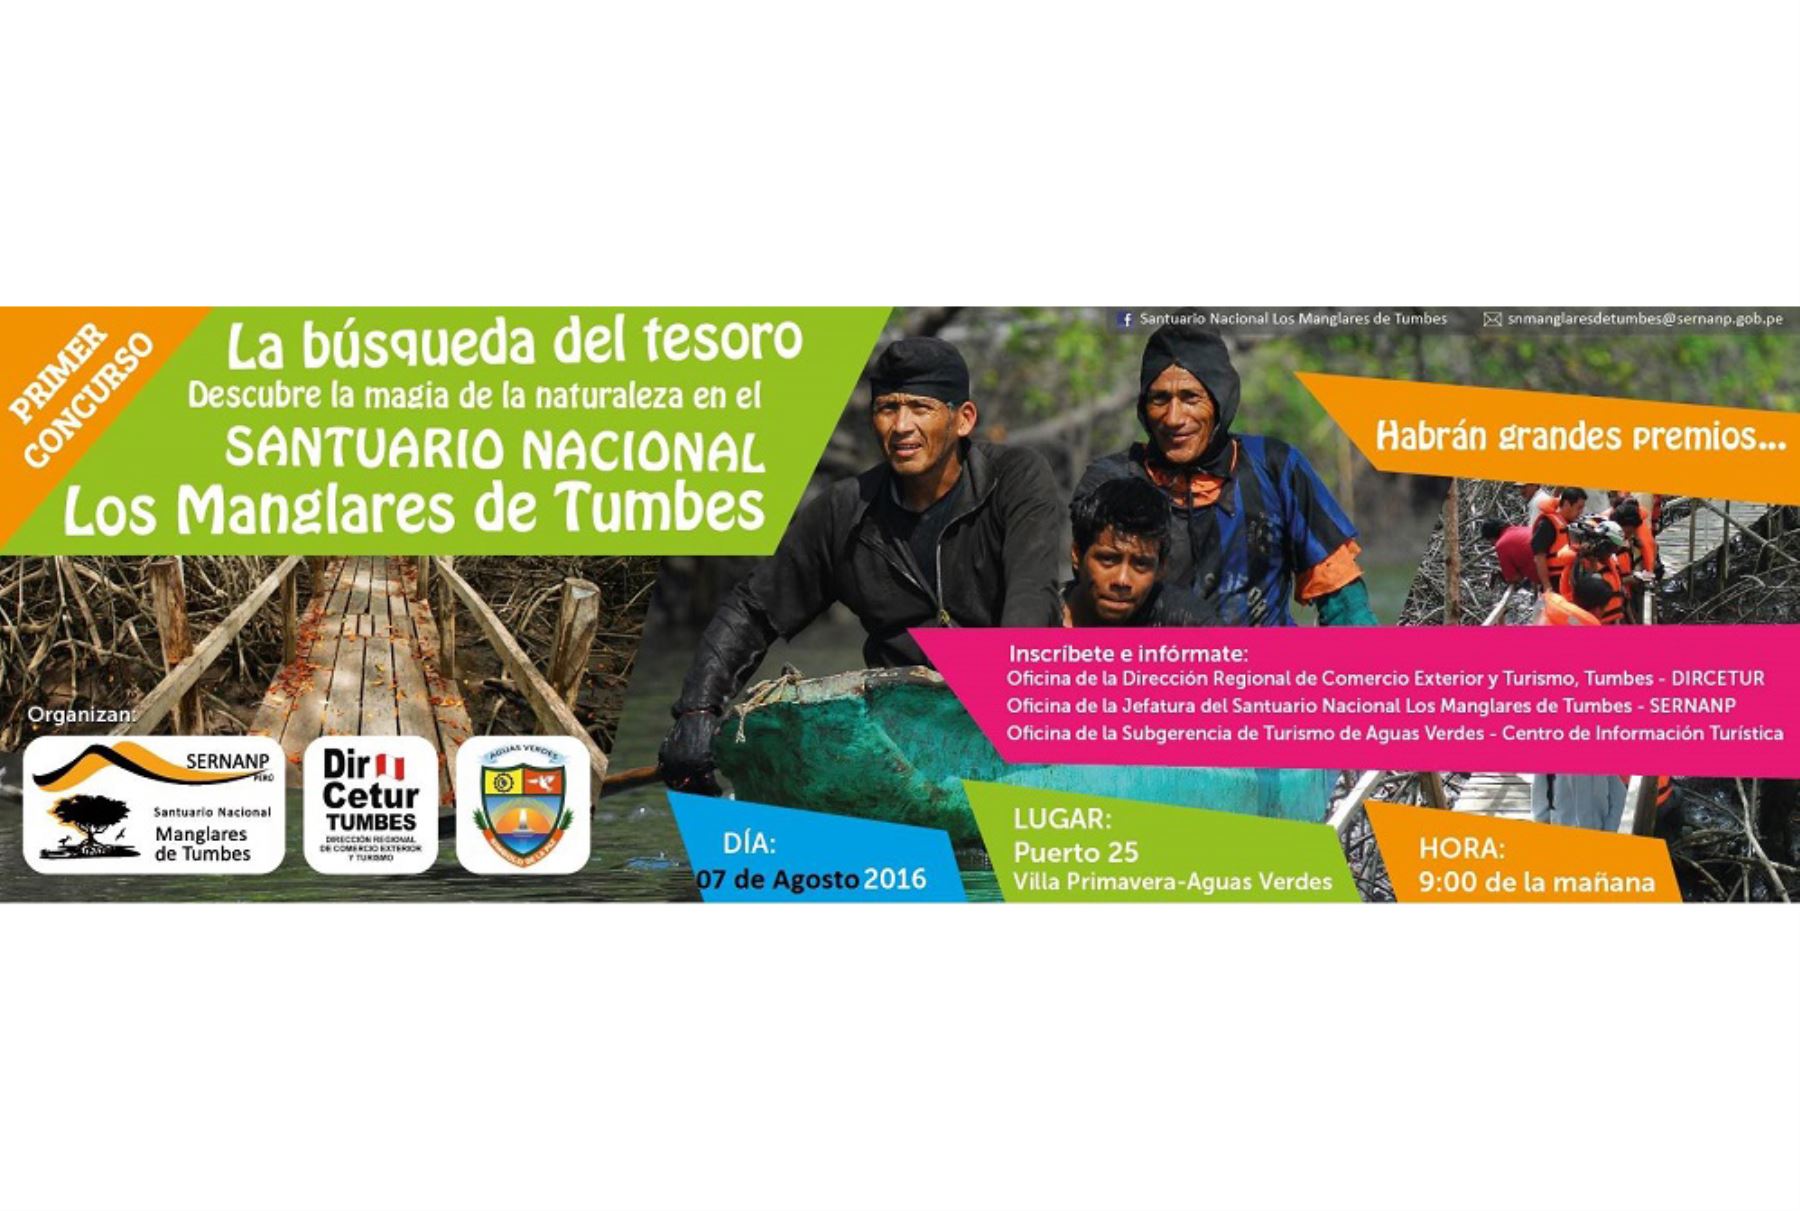 Realizan concurso de Búsqueda del Tesoro en Santuario Nacional Los Manglares de Tumbes